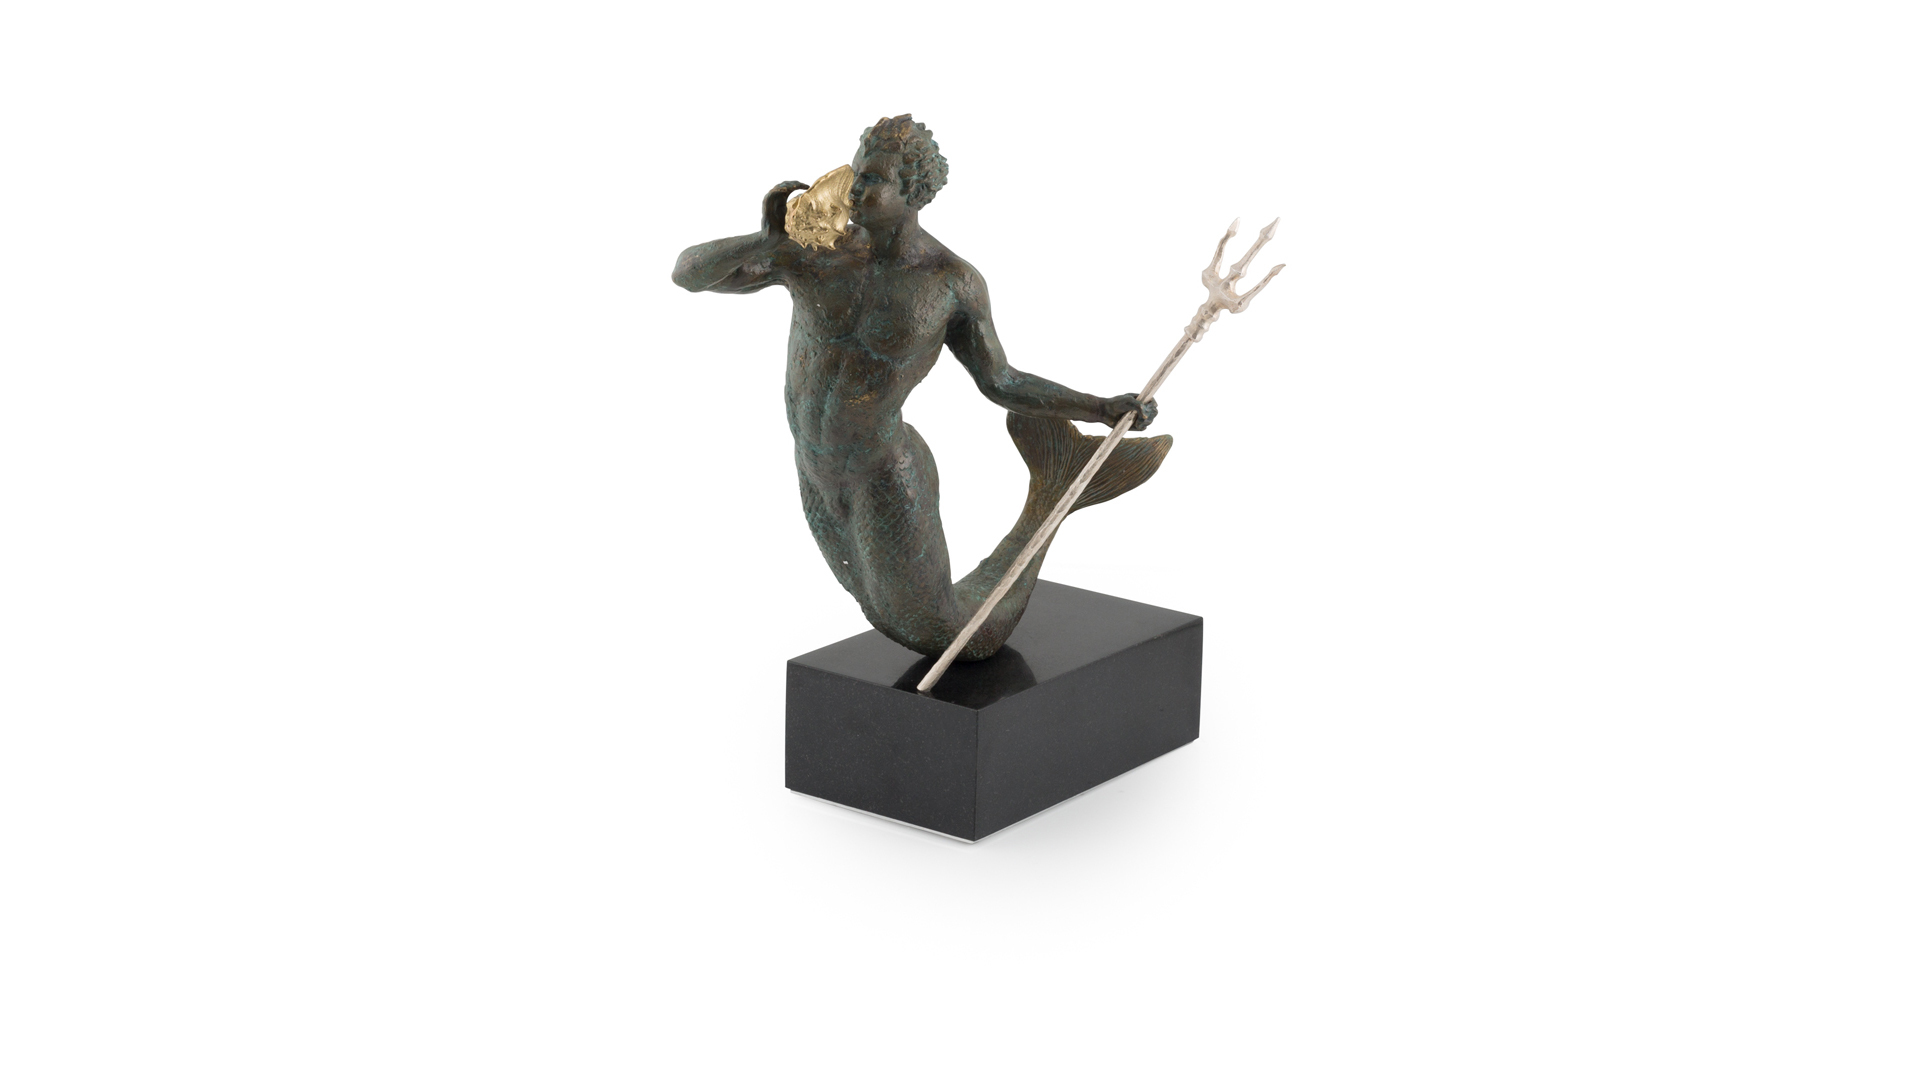 Скульптура Michael Aram Тритон 56 см, 2017г, лимвып136 шт